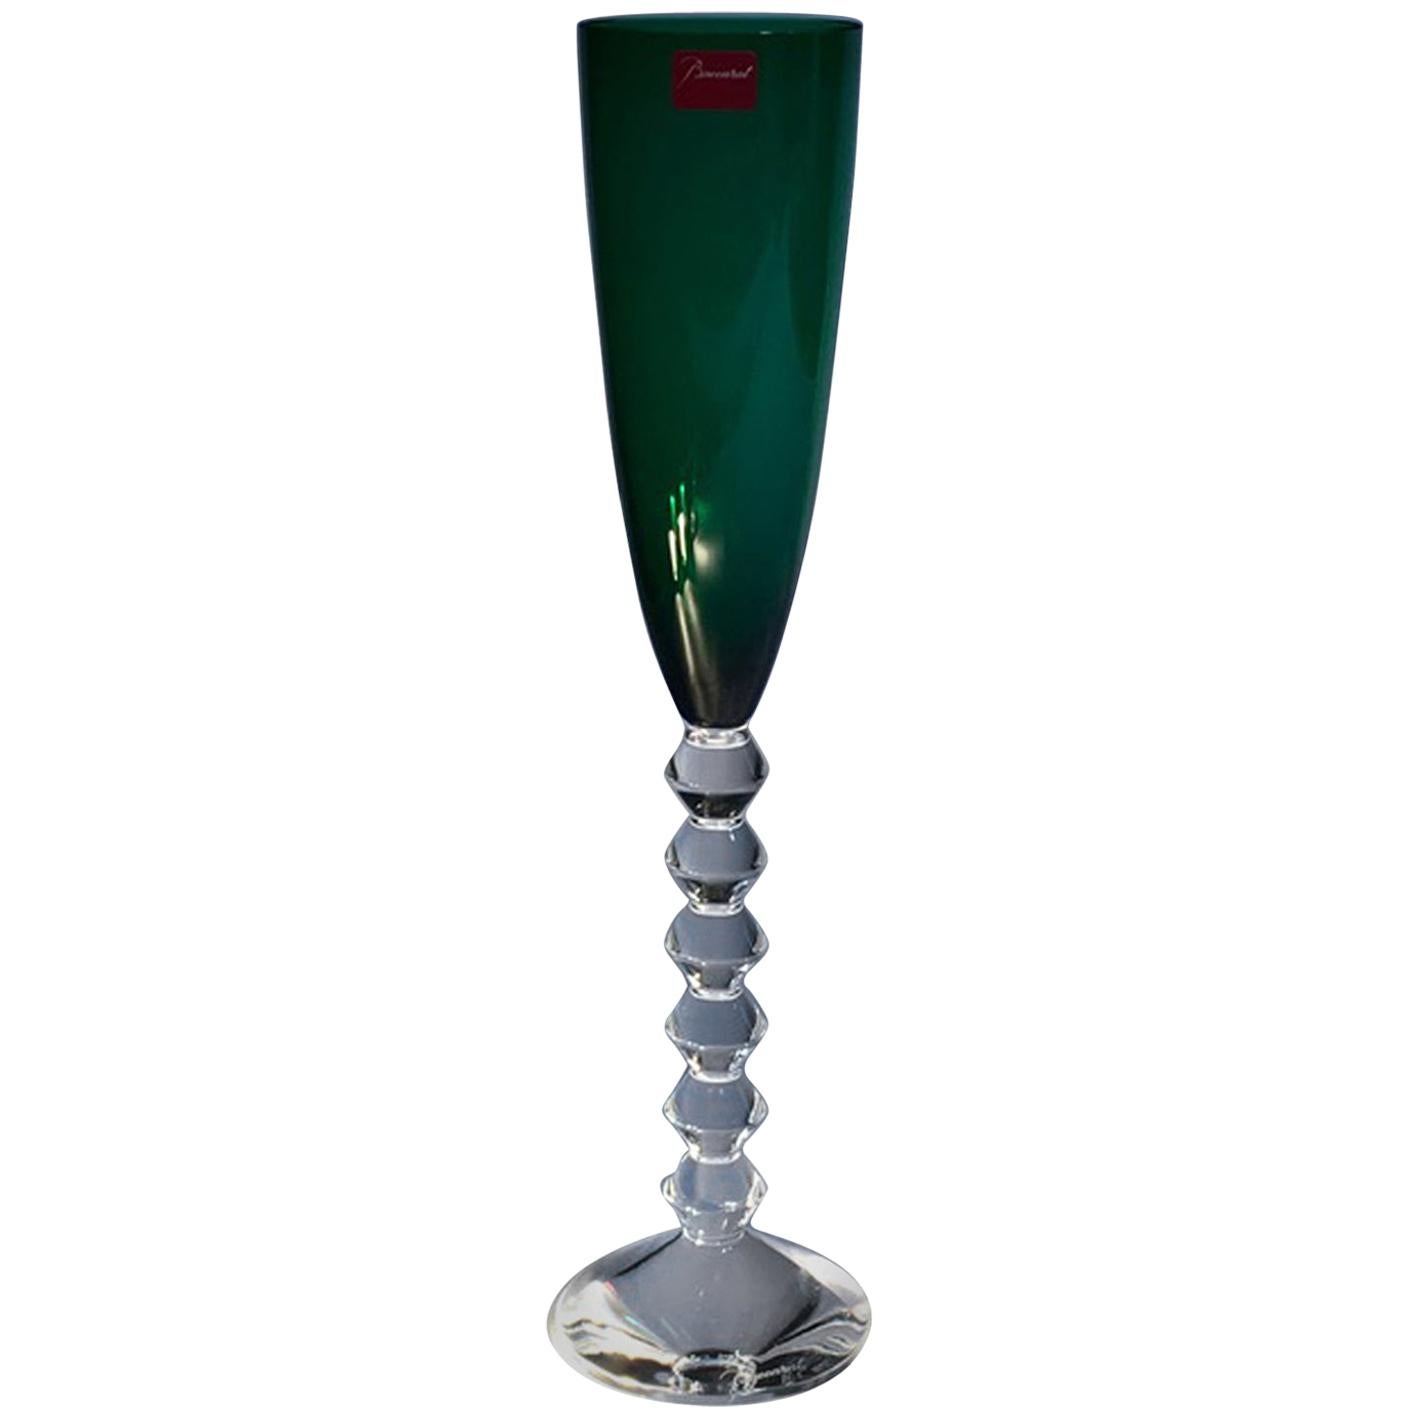 Baccarat Green Crystal Goblet, France